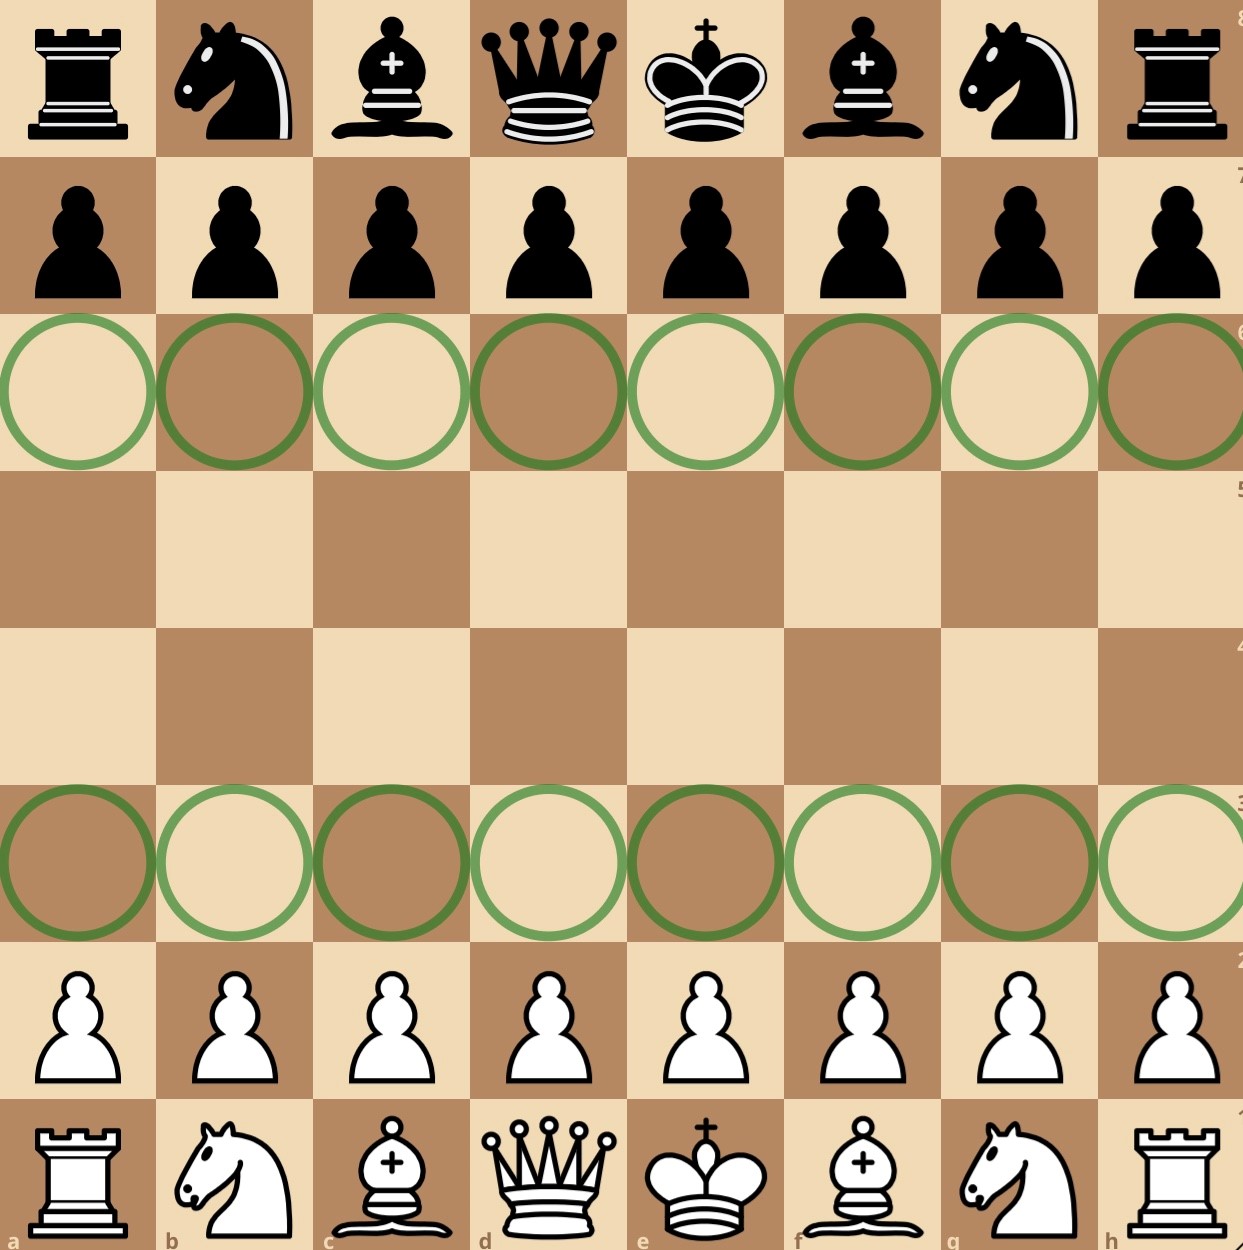 long castle in chess